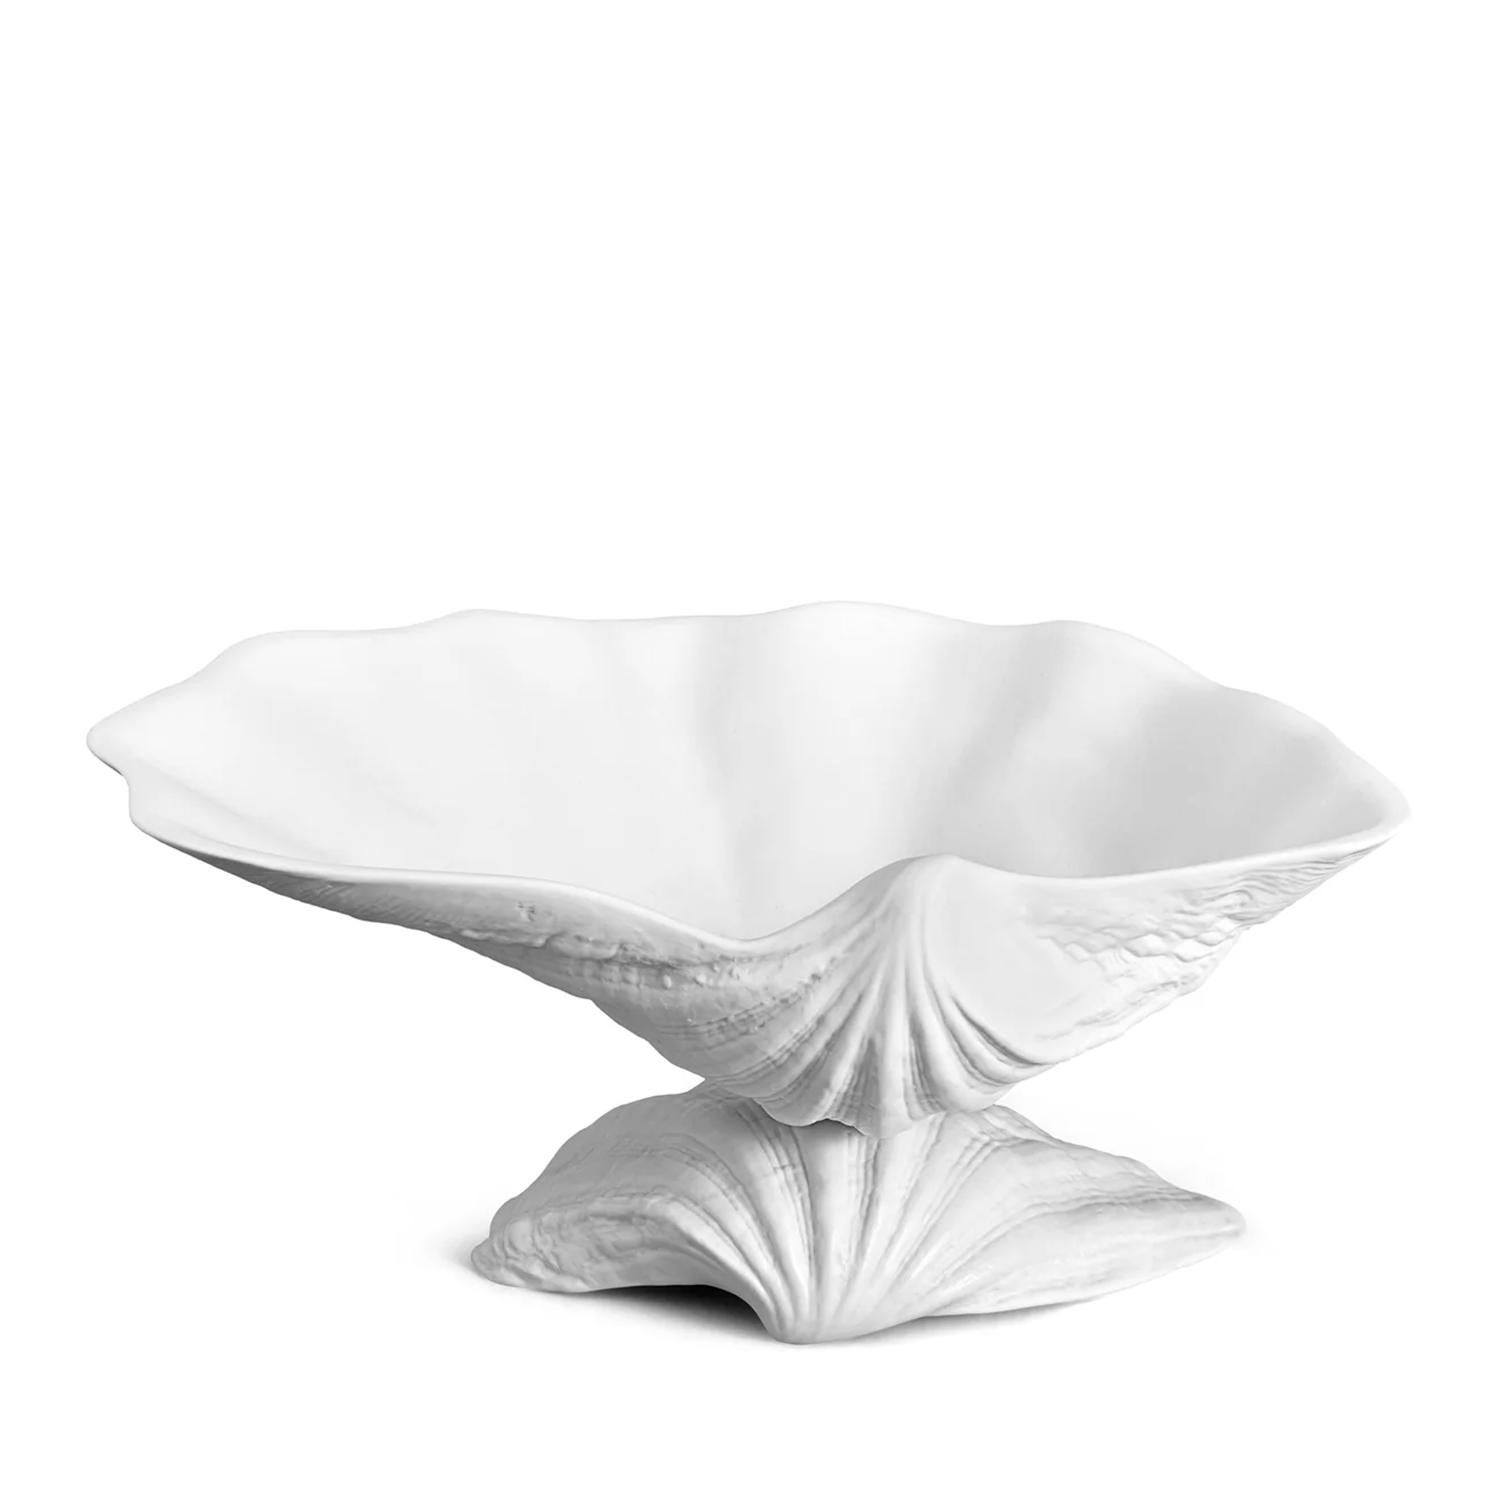 Plat Sea Shell Medium avec toute la structure en 
Porcelaine fine fabriquée à la main en finition blanche.
Livré dans un luxueux coffret cadeau.